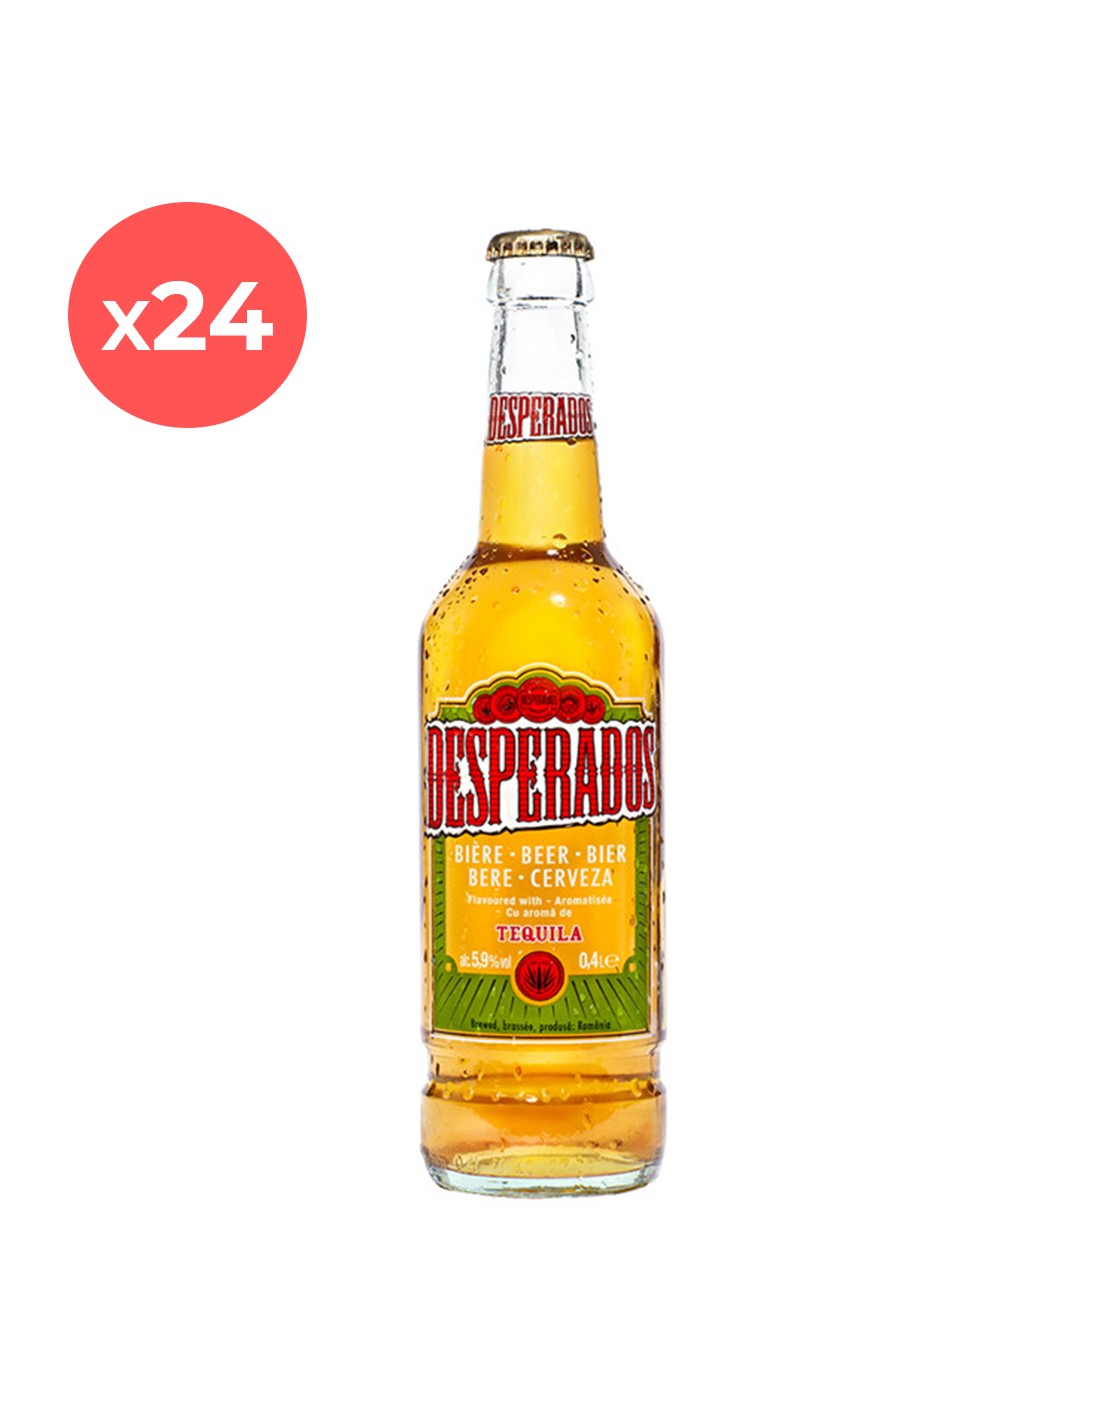 Bax 24 bucati bere blonda, filtrata, Desperados, 5.9% alc., 0.4L, sticla, Romania alcooldiscount.ro